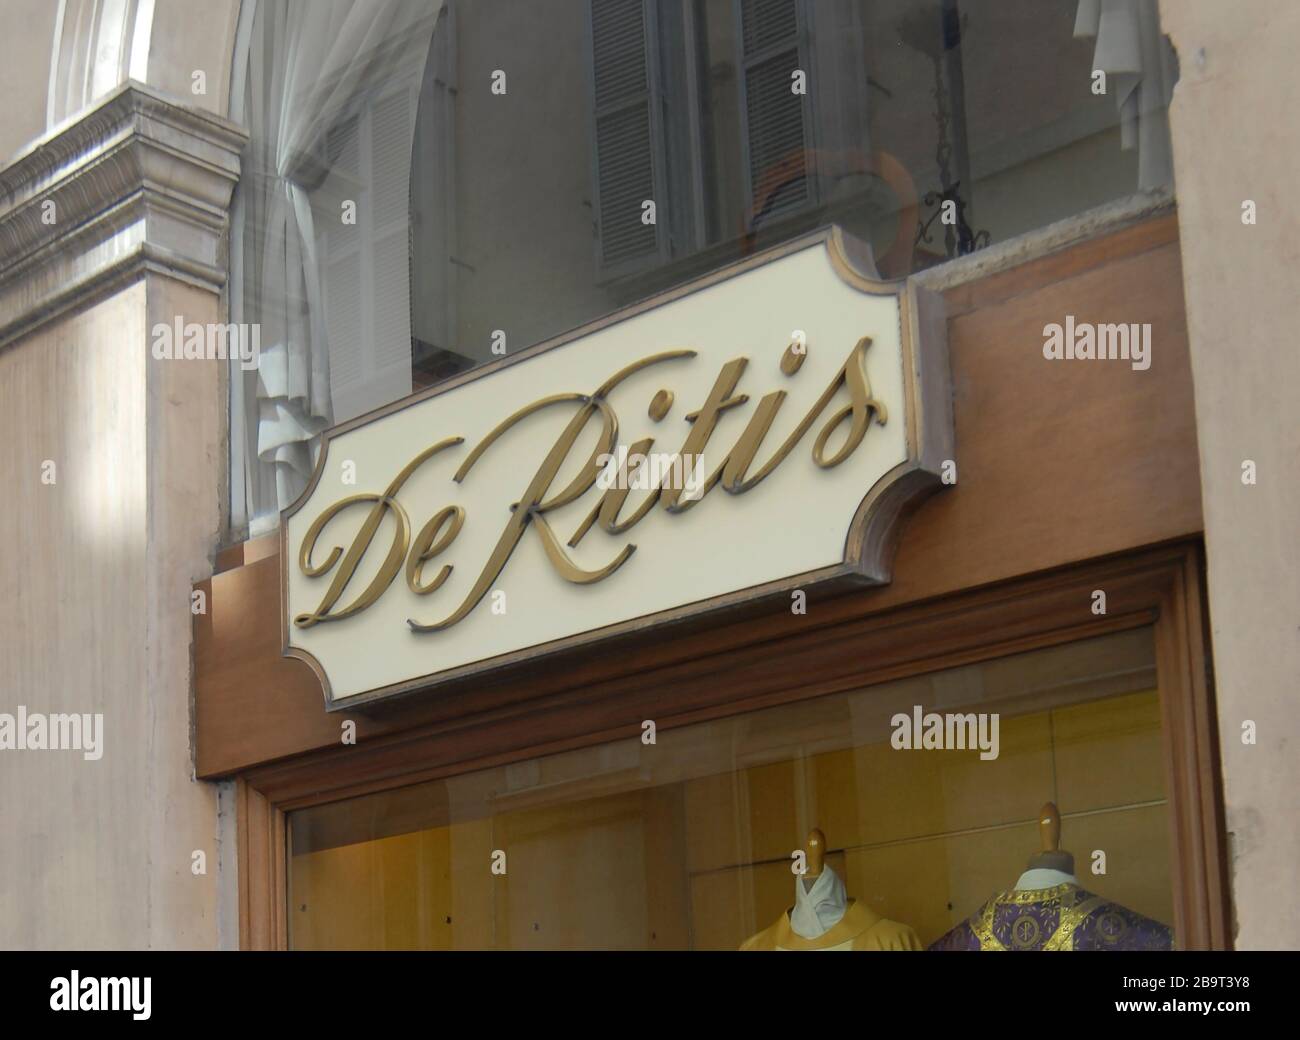 De Ritis boutique, Roma, Italy Stock Photo